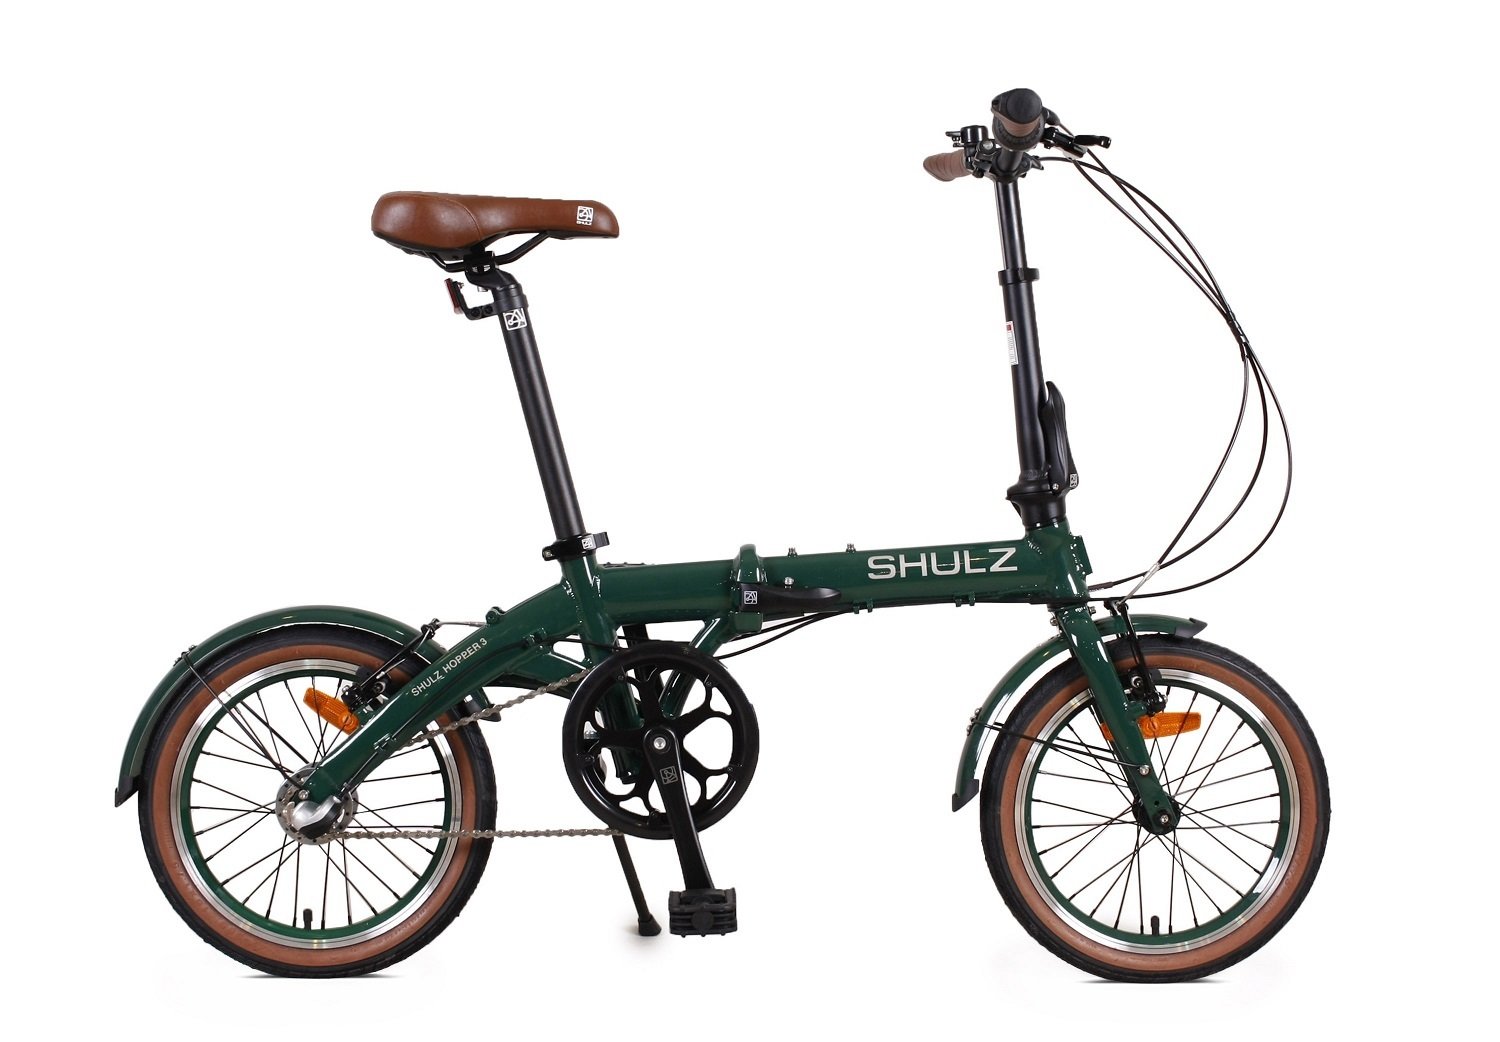 Складной велосипед SHULZ Hopper 3, PT-3435C, 2021, 2000008311656 журнал звезда 7 2021